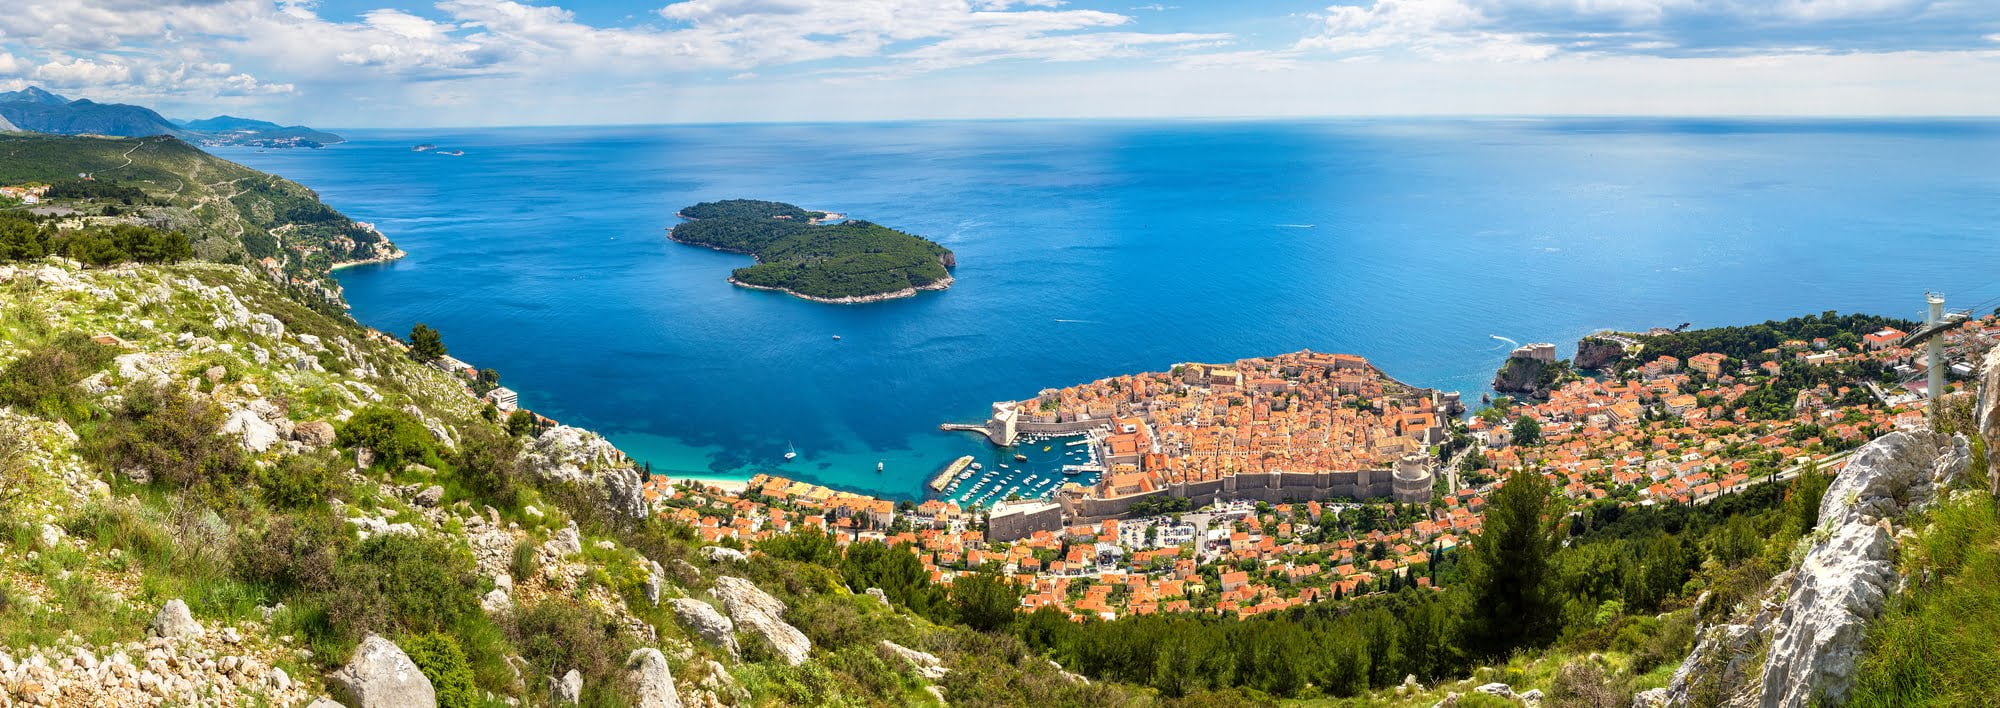 Den smukke by Dubrovnik, Kroatien